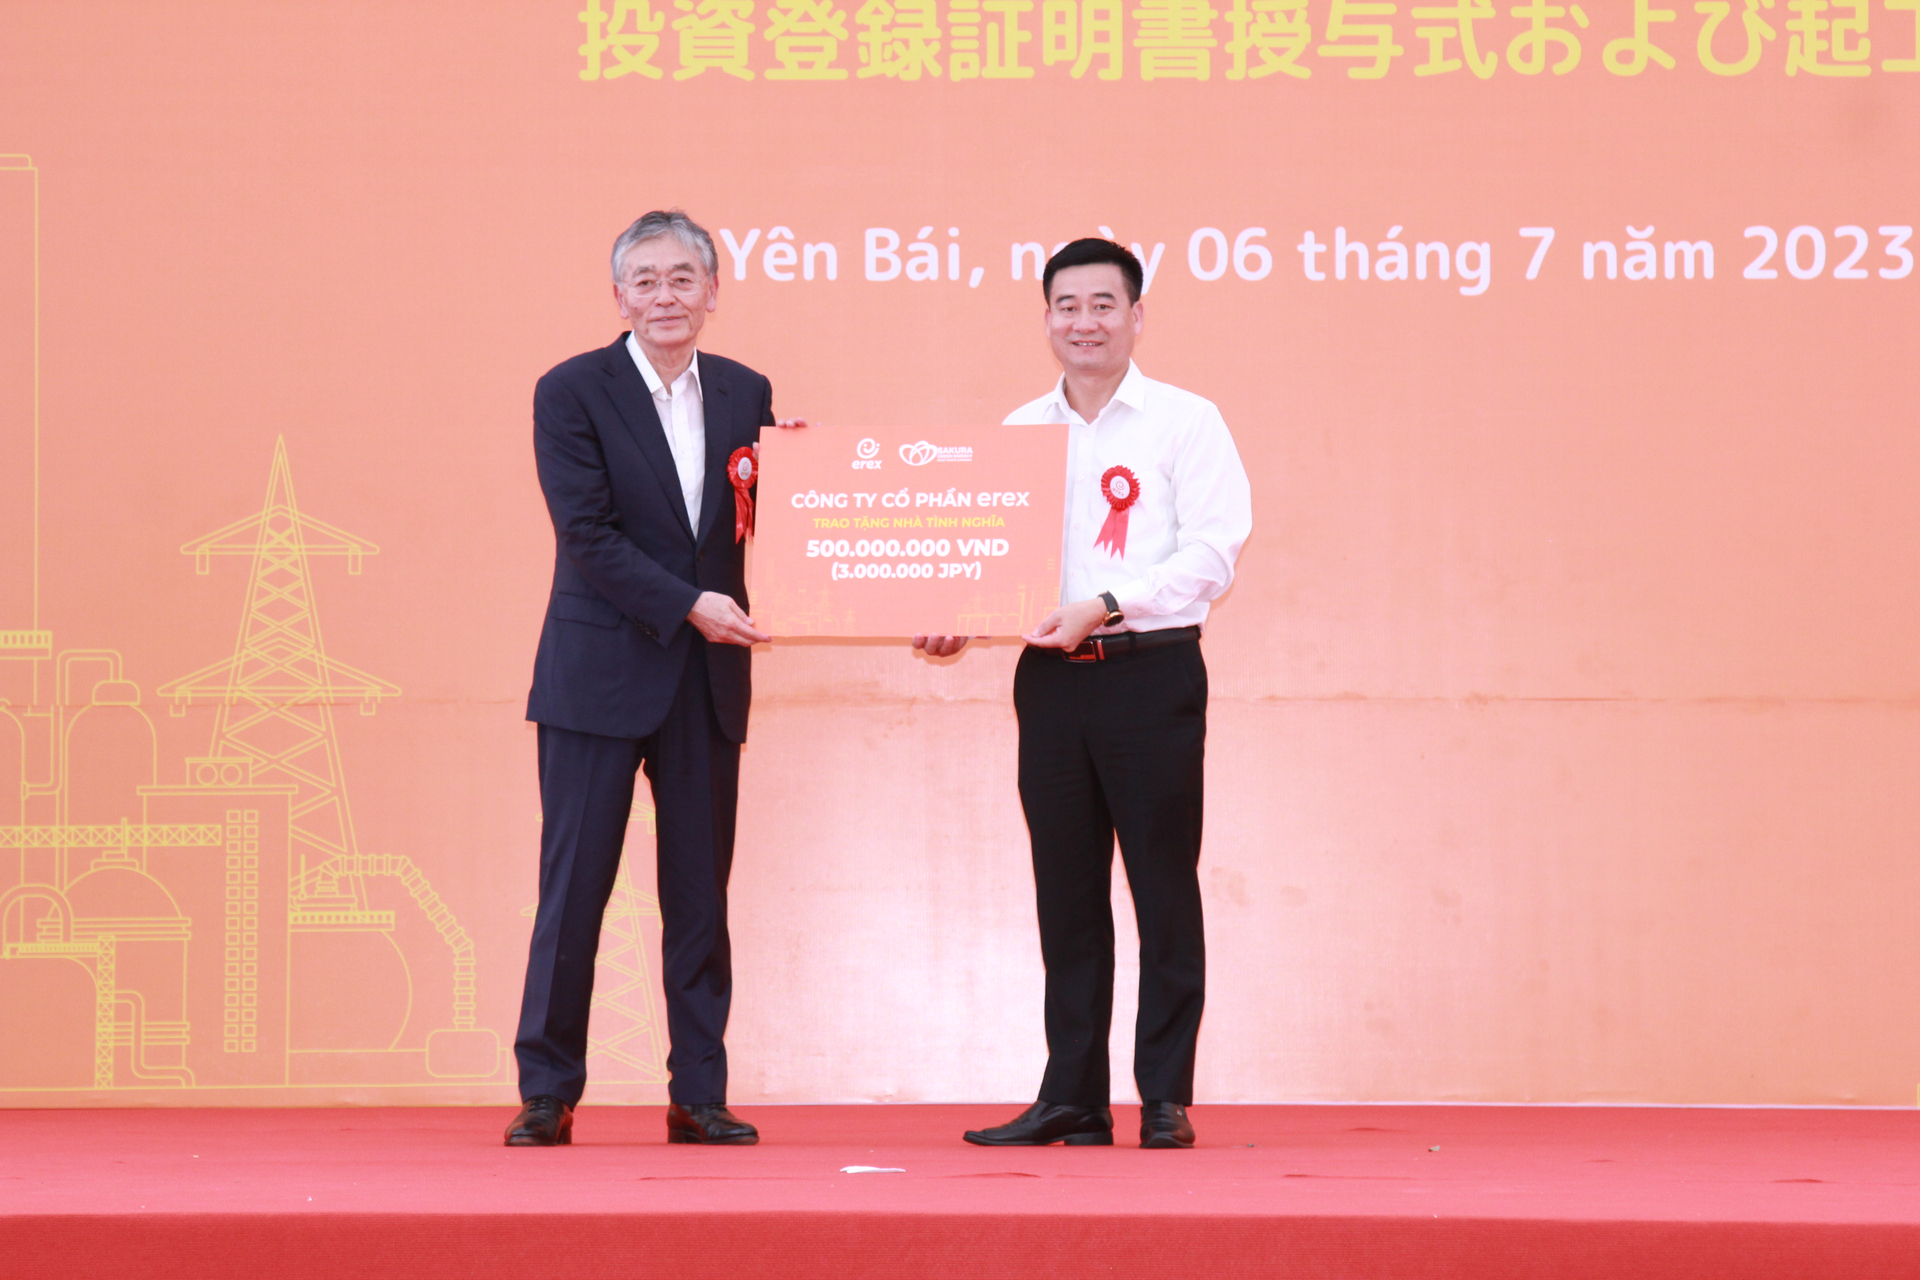 Đại diện Công ty Cổ phần EREX trao tặng nhà tình nghĩa cho huyện Văn Yên. Ảnh: Thanh Tiến.